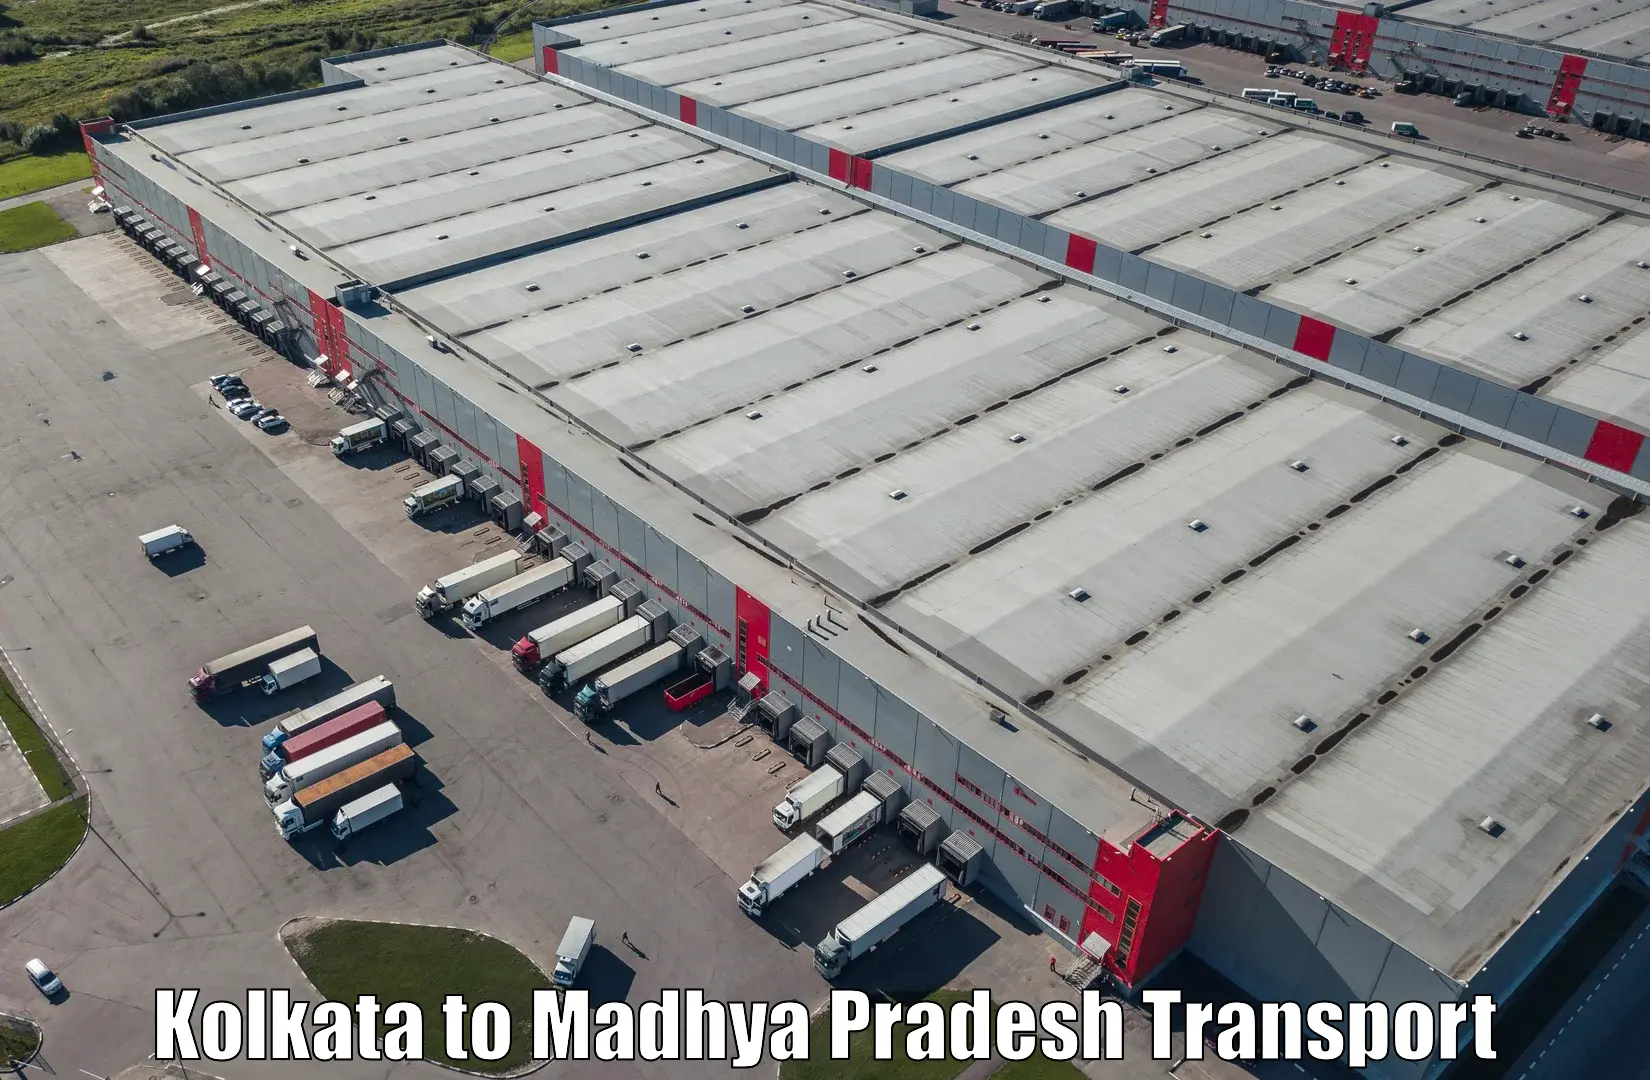 Daily transport service Kolkata to Madhya Pradesh